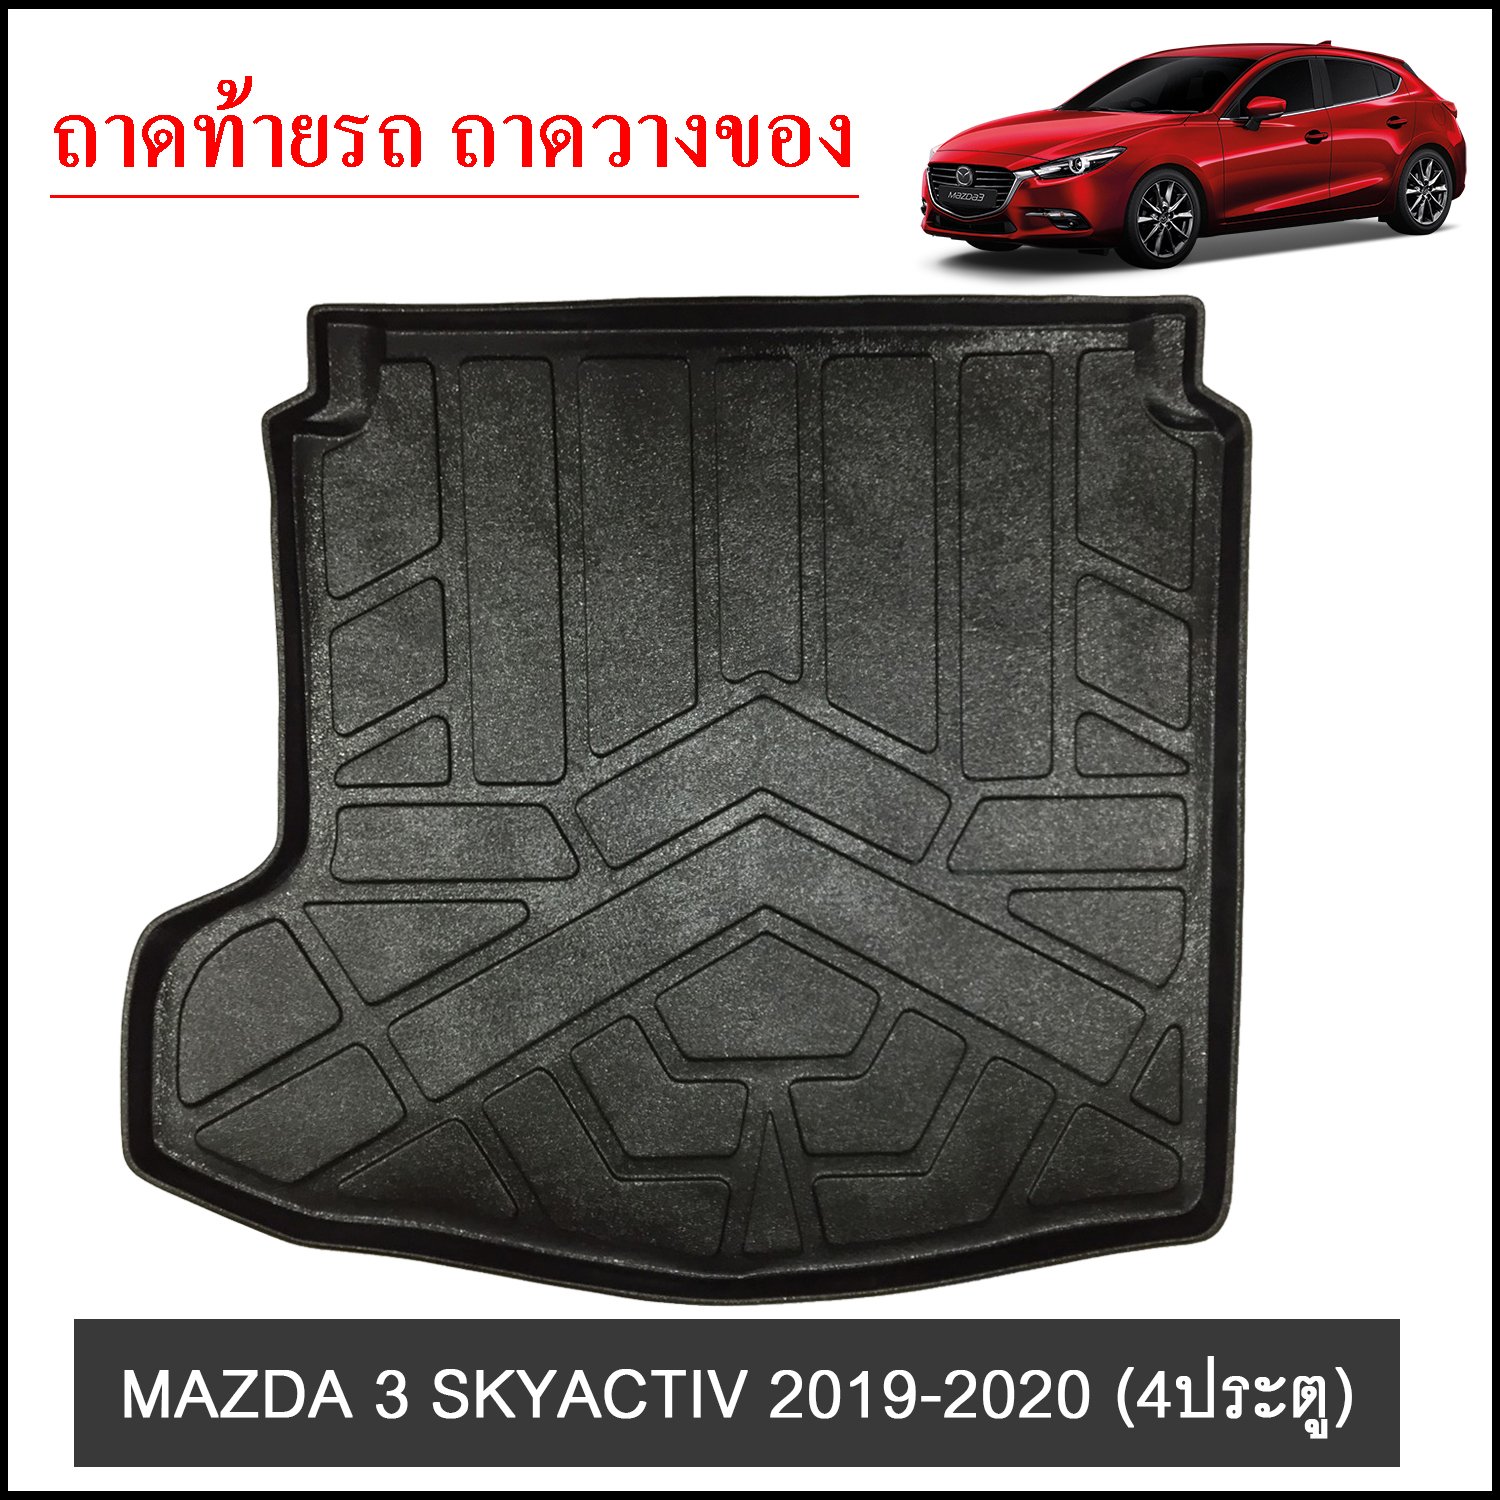 ถาดท้ายวางของ MAZDA 3 SKYACTIV 2019-2020 4ประตู